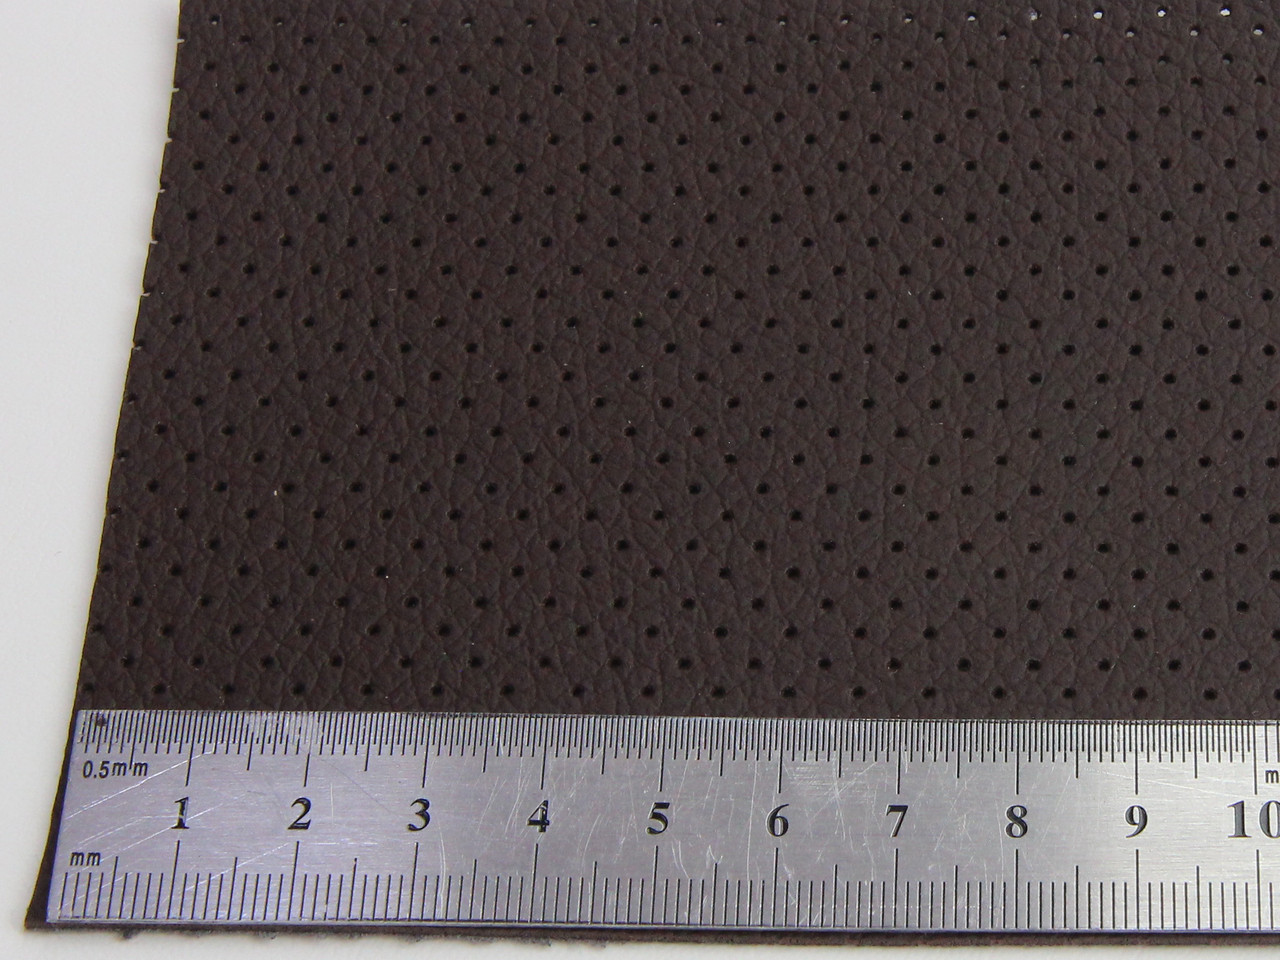 Автомобільний шкірзам перфорований NUOVO 30478п кавовий, на тканинній основі (ширина 1,40м) Туреччина детальна фотка